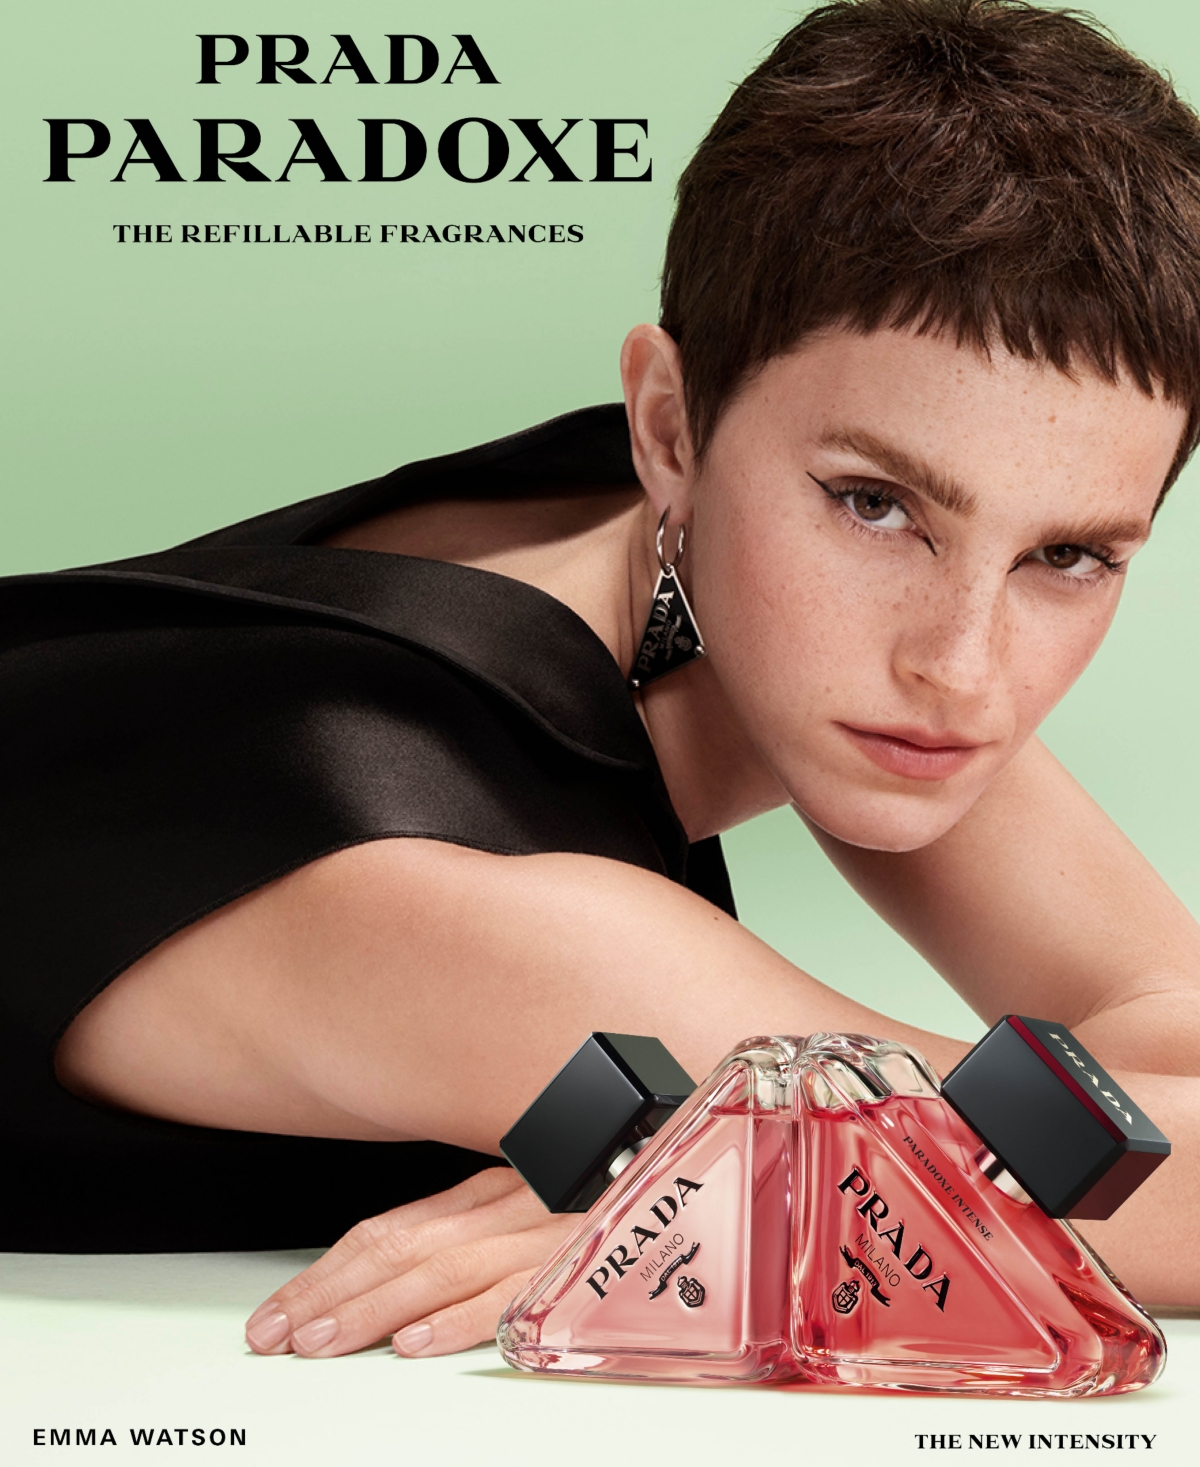 Shop Prada Paradoxe Intense Eau De Parfum, 3 Oz. In No Color